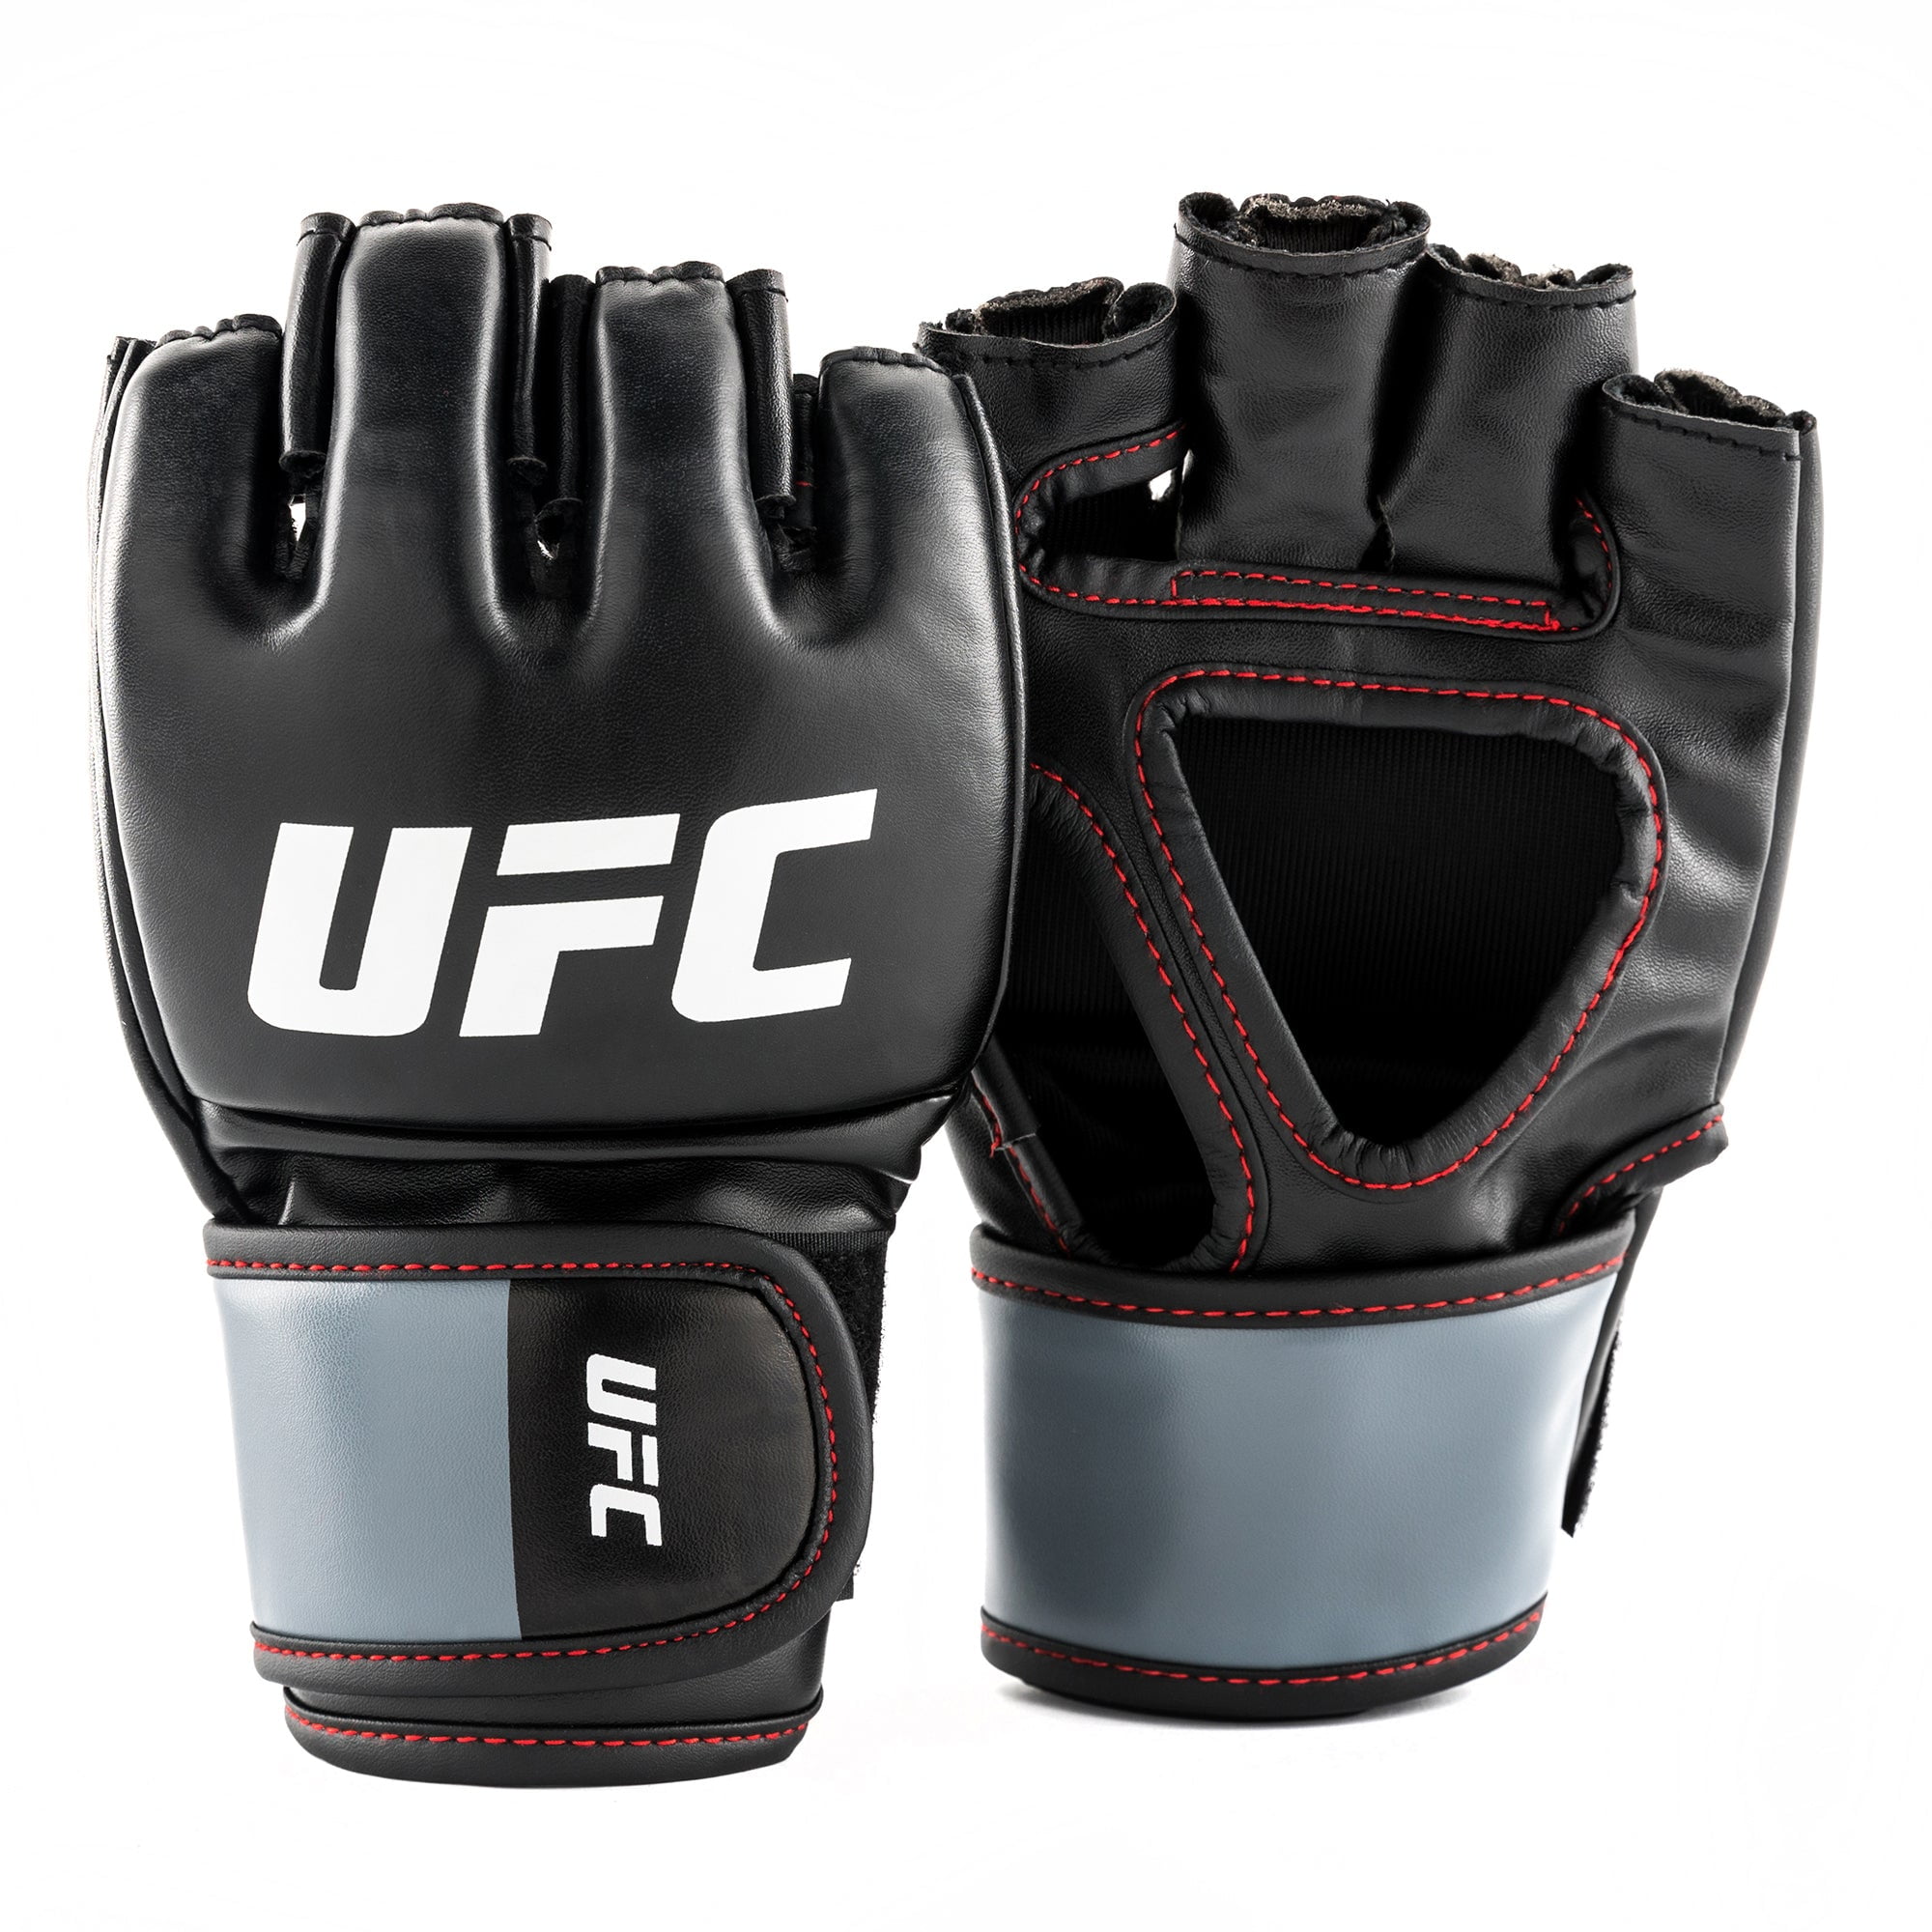 UFC MMA Gloves - 5oz Black S/M Grappling Mixed Martial Arts - Walmart.com